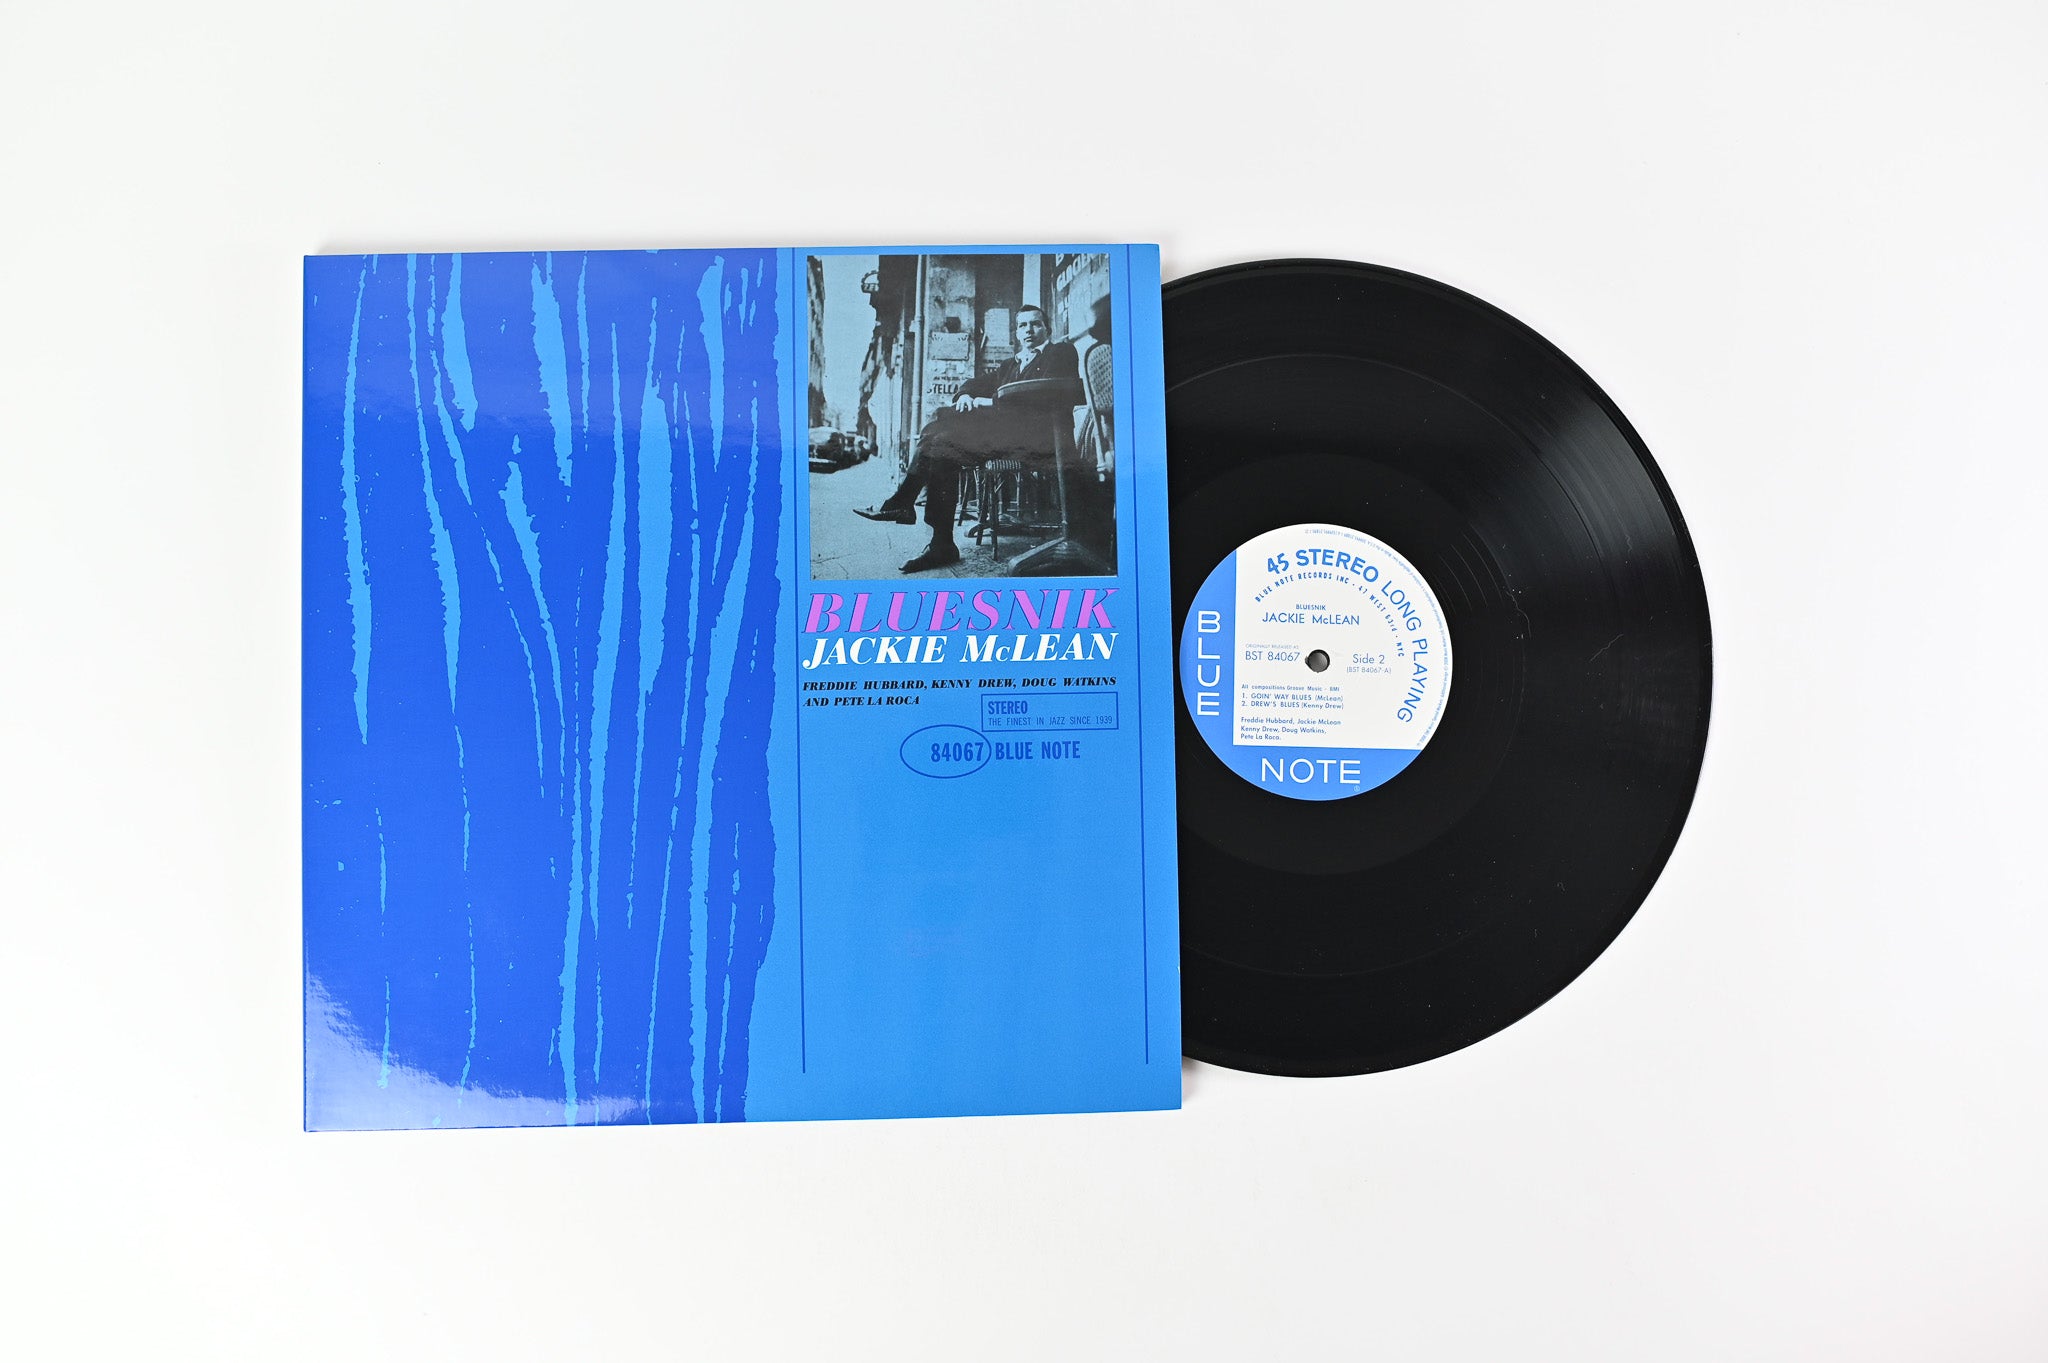 Jackie McLean - Bluesnik on Blue Note Ltd Music Matters 45 RPM Reissue